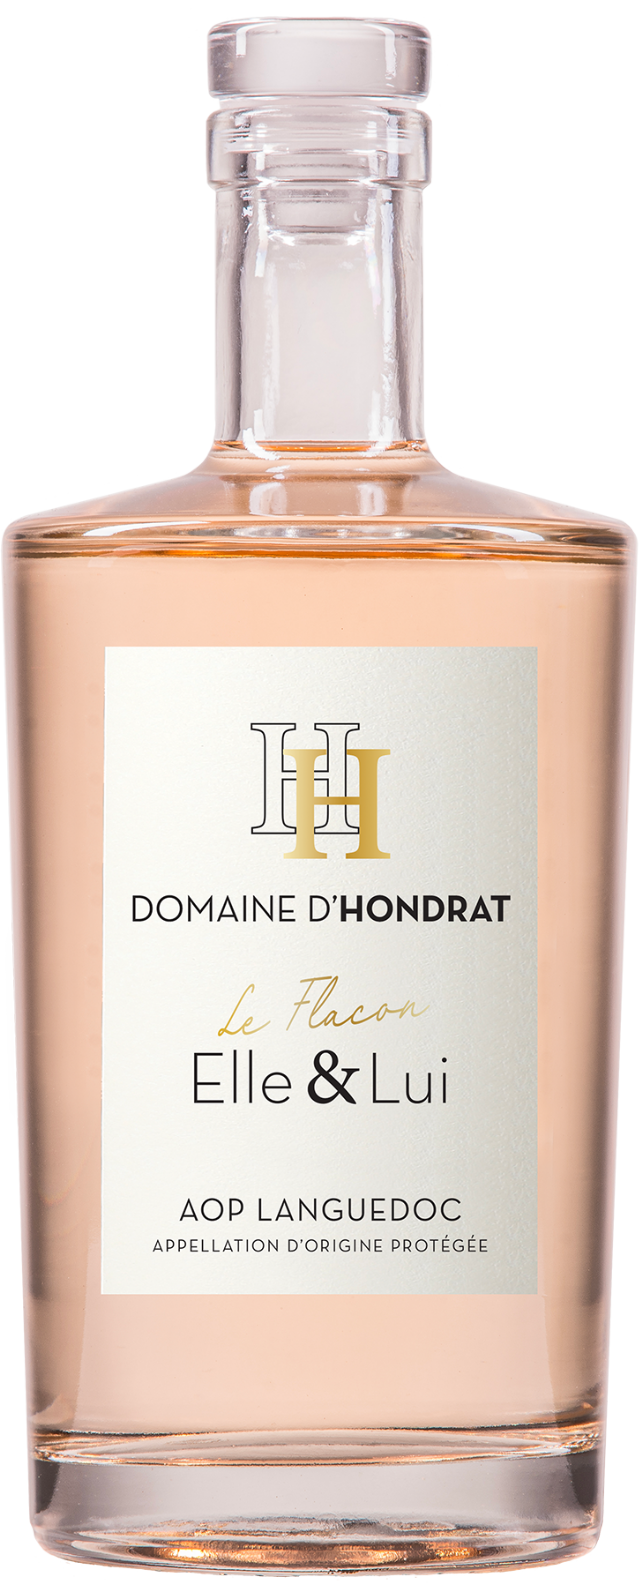 Domaine d'Hondrat Elle & Lui rosé